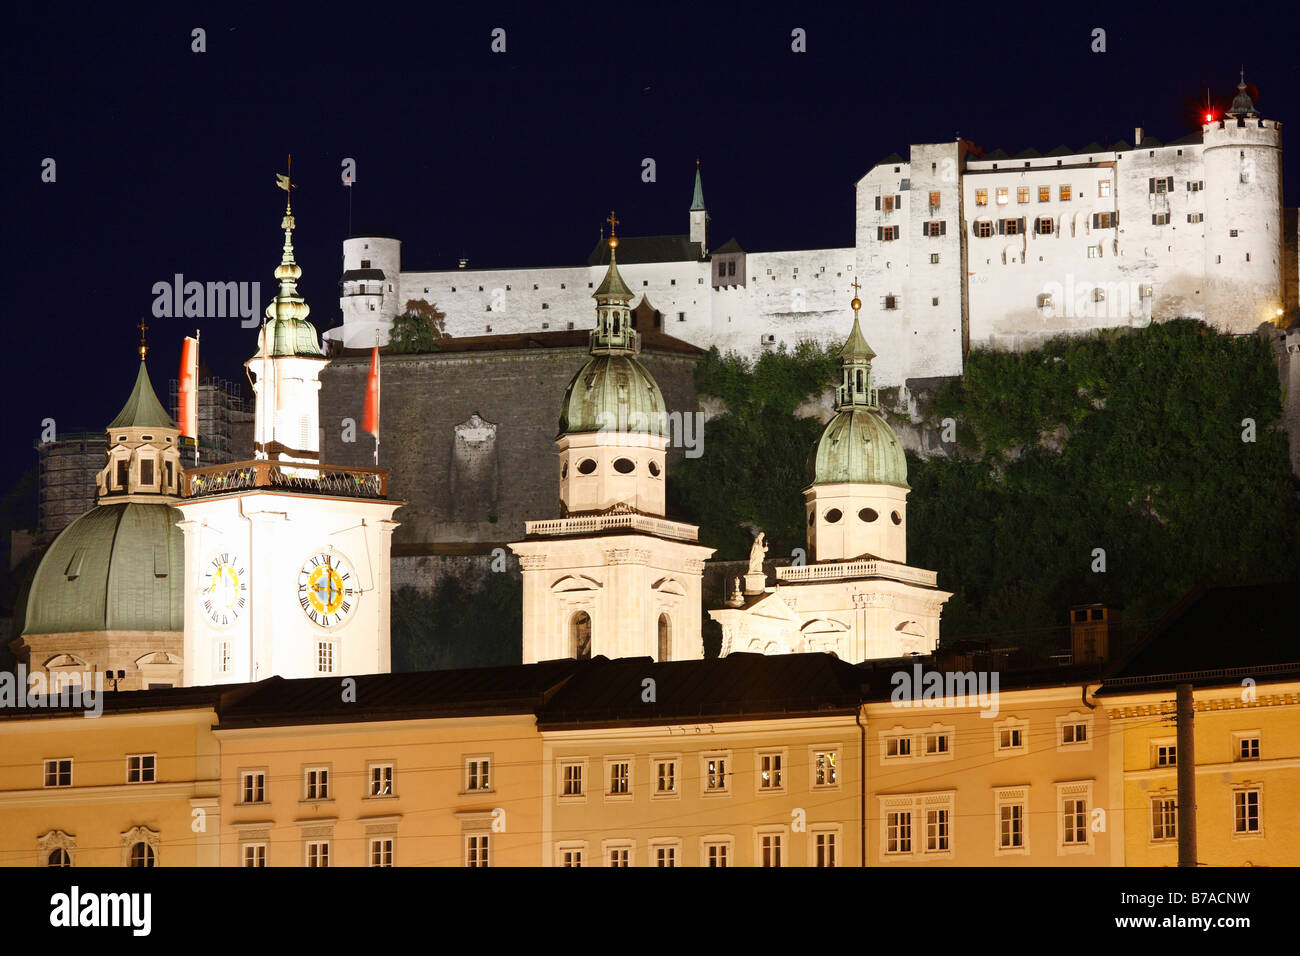 Hôtel de ville, la cathédrale et la forteresse de Hohensalzburg Festung, photo de nuit, Salzburg, Autriche, Europe Banque D'Images